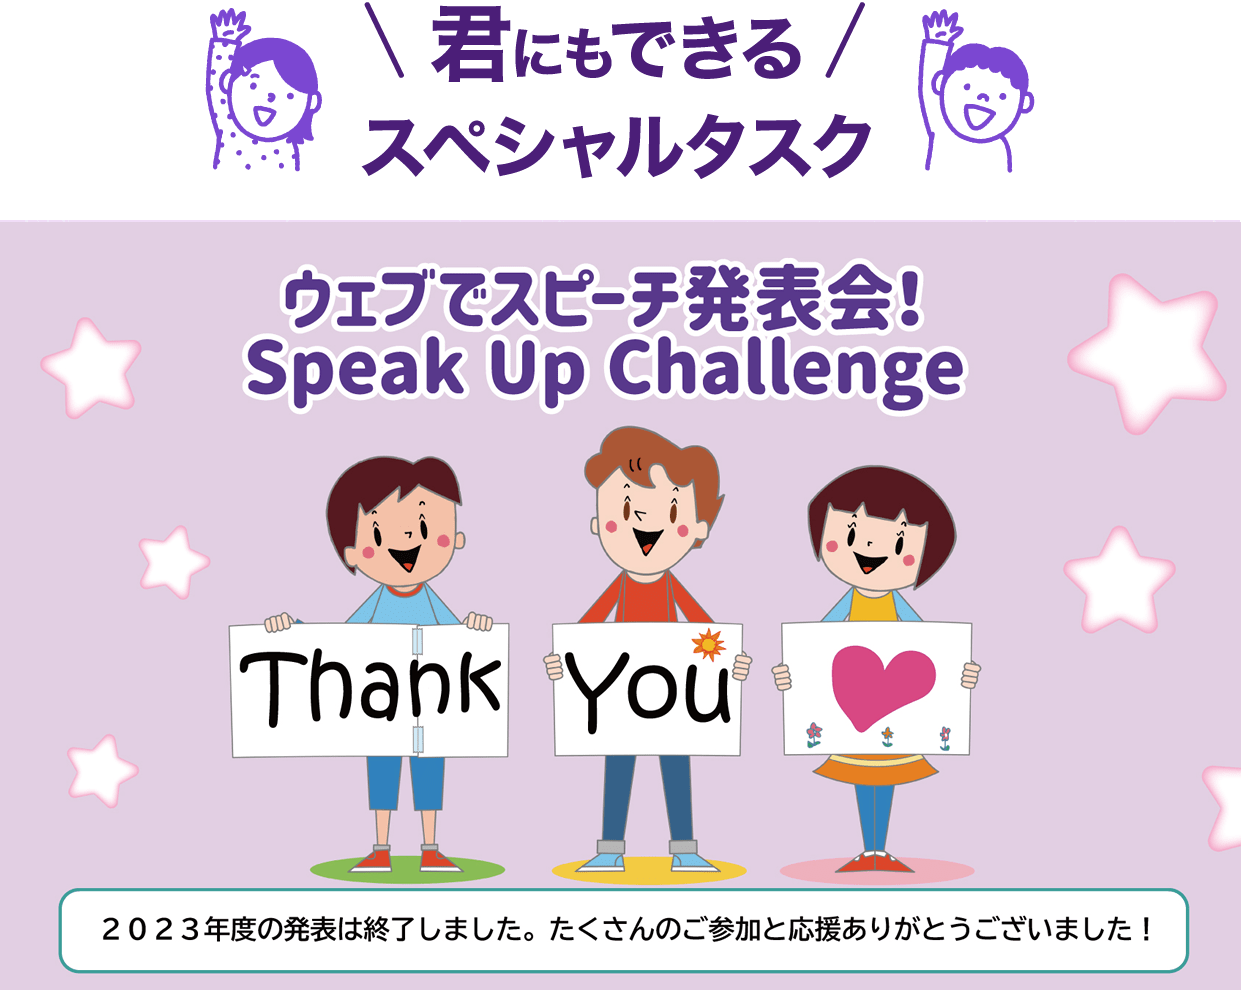 【君にもできるスペシャルタスク！】ウェブでスピーチ発表会！Speak Up Challenge